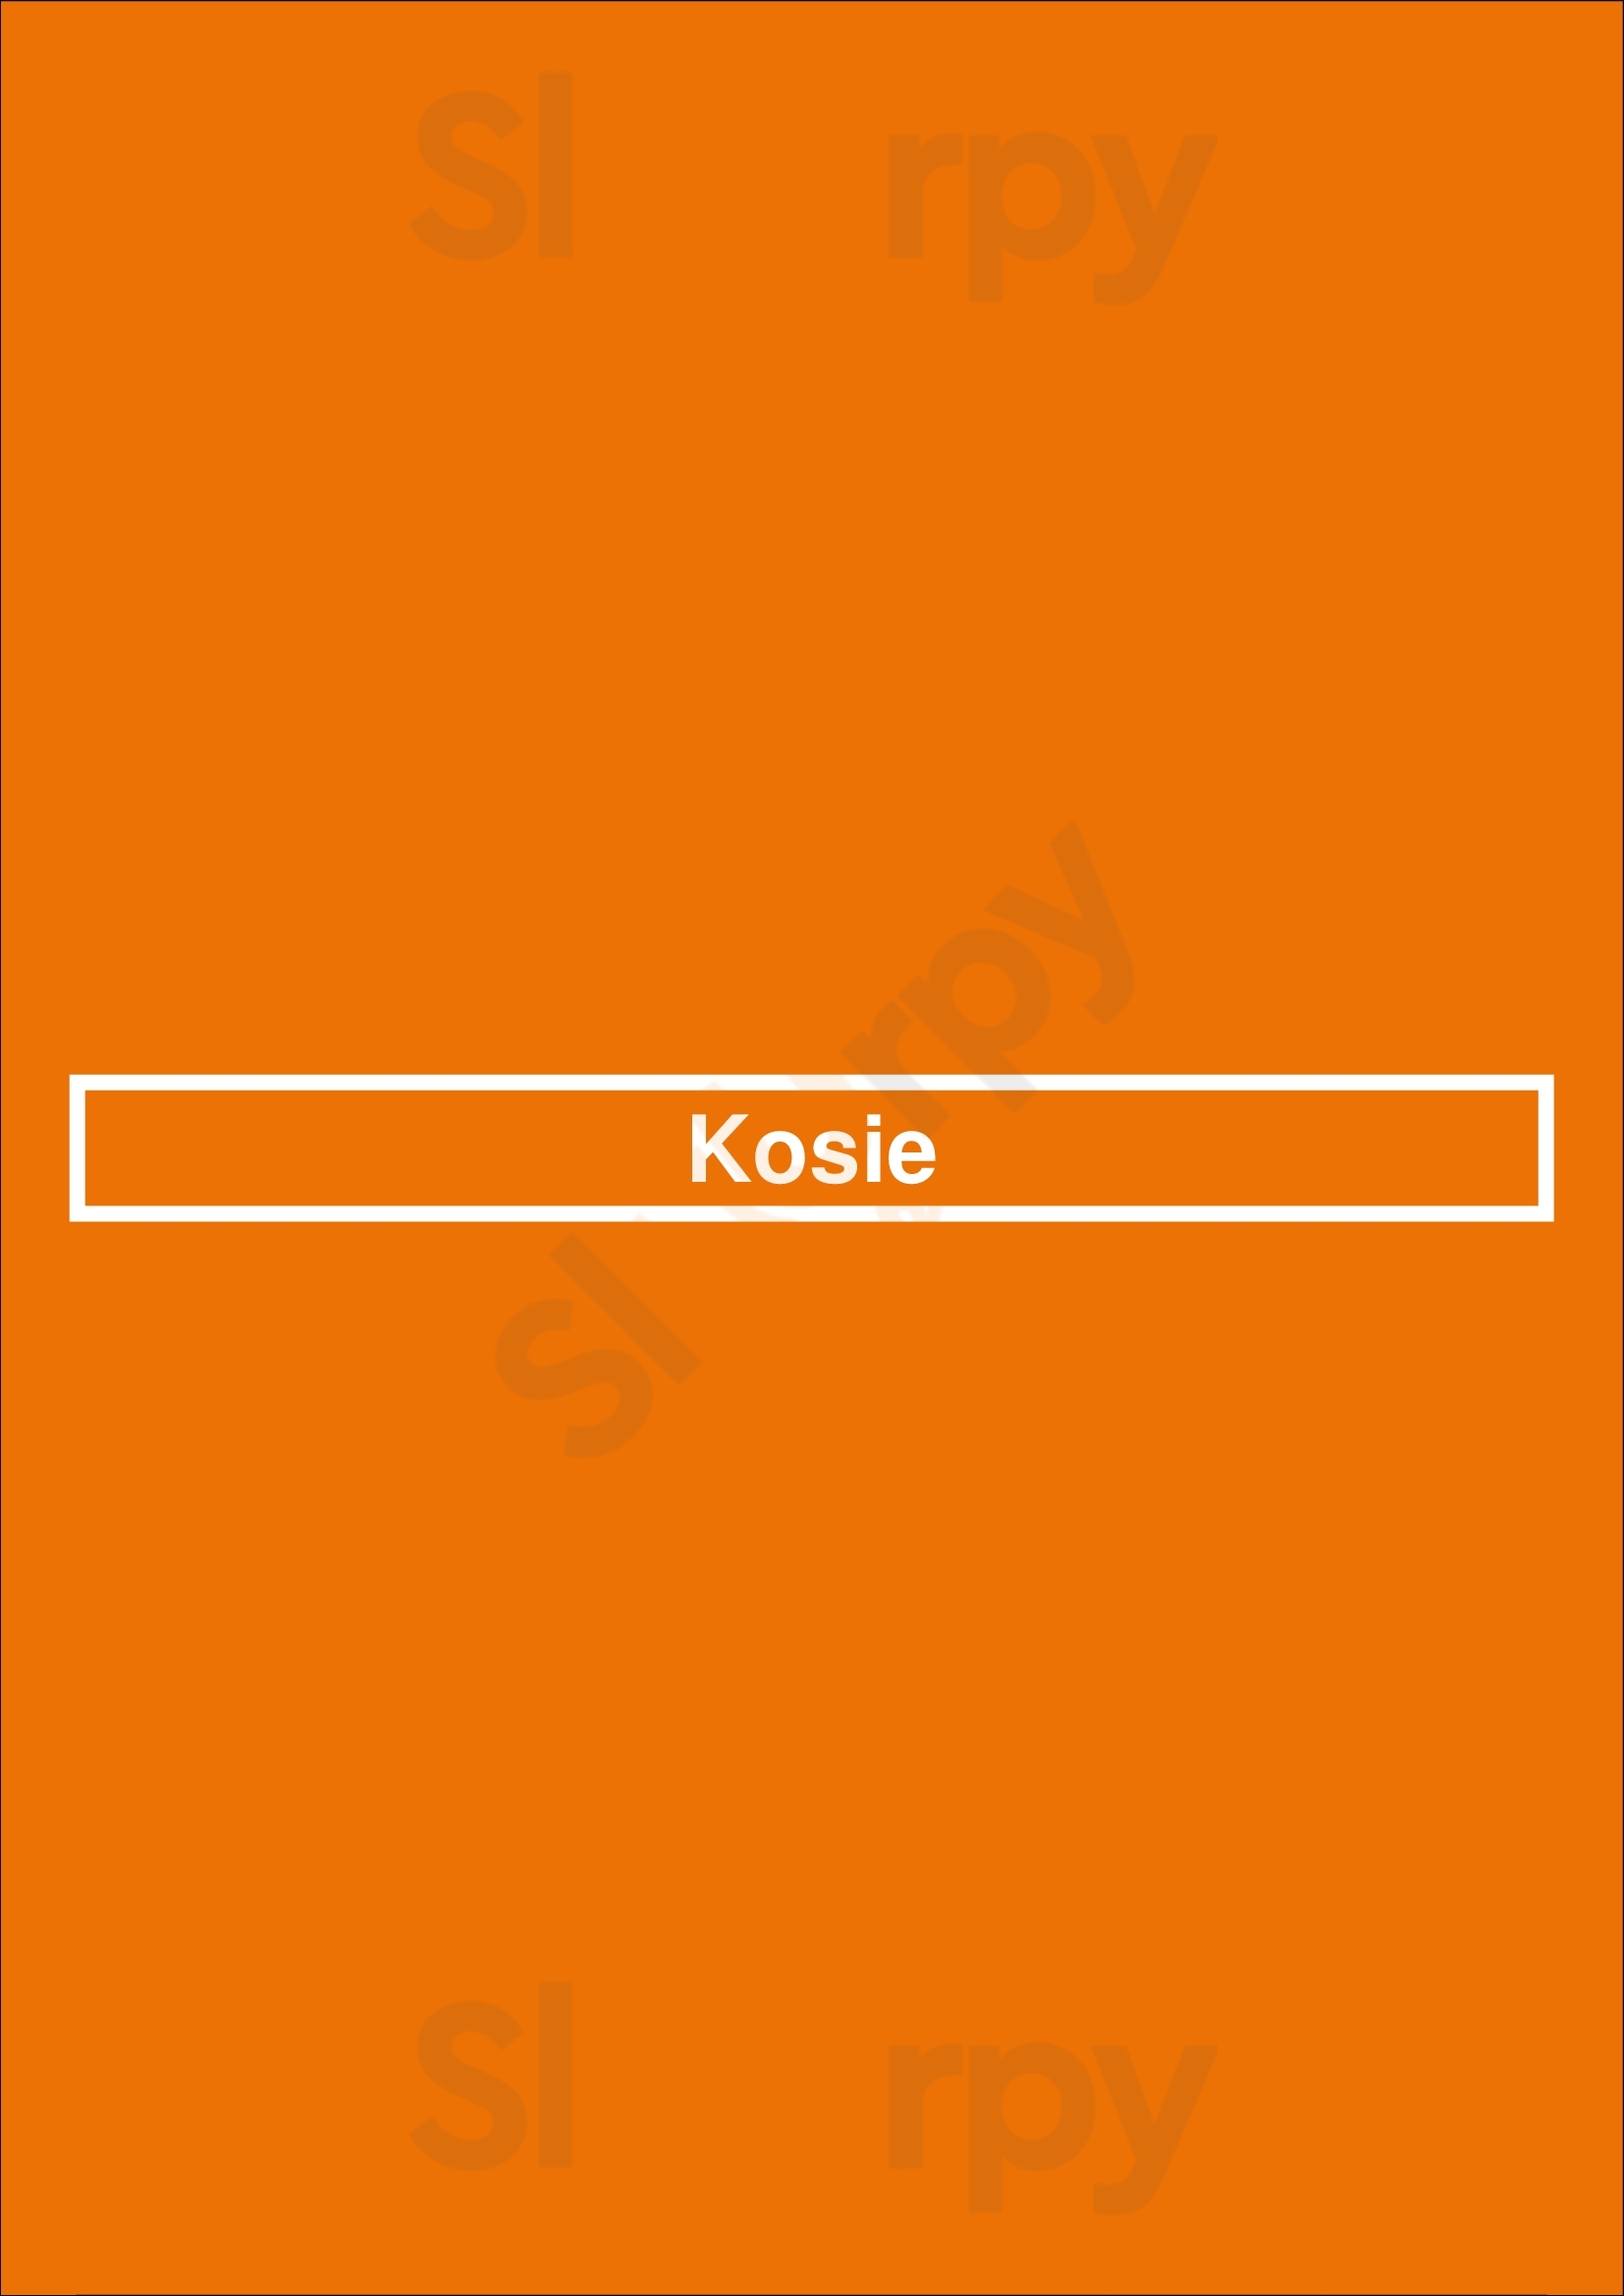 Kosie Enschede Menu - 1